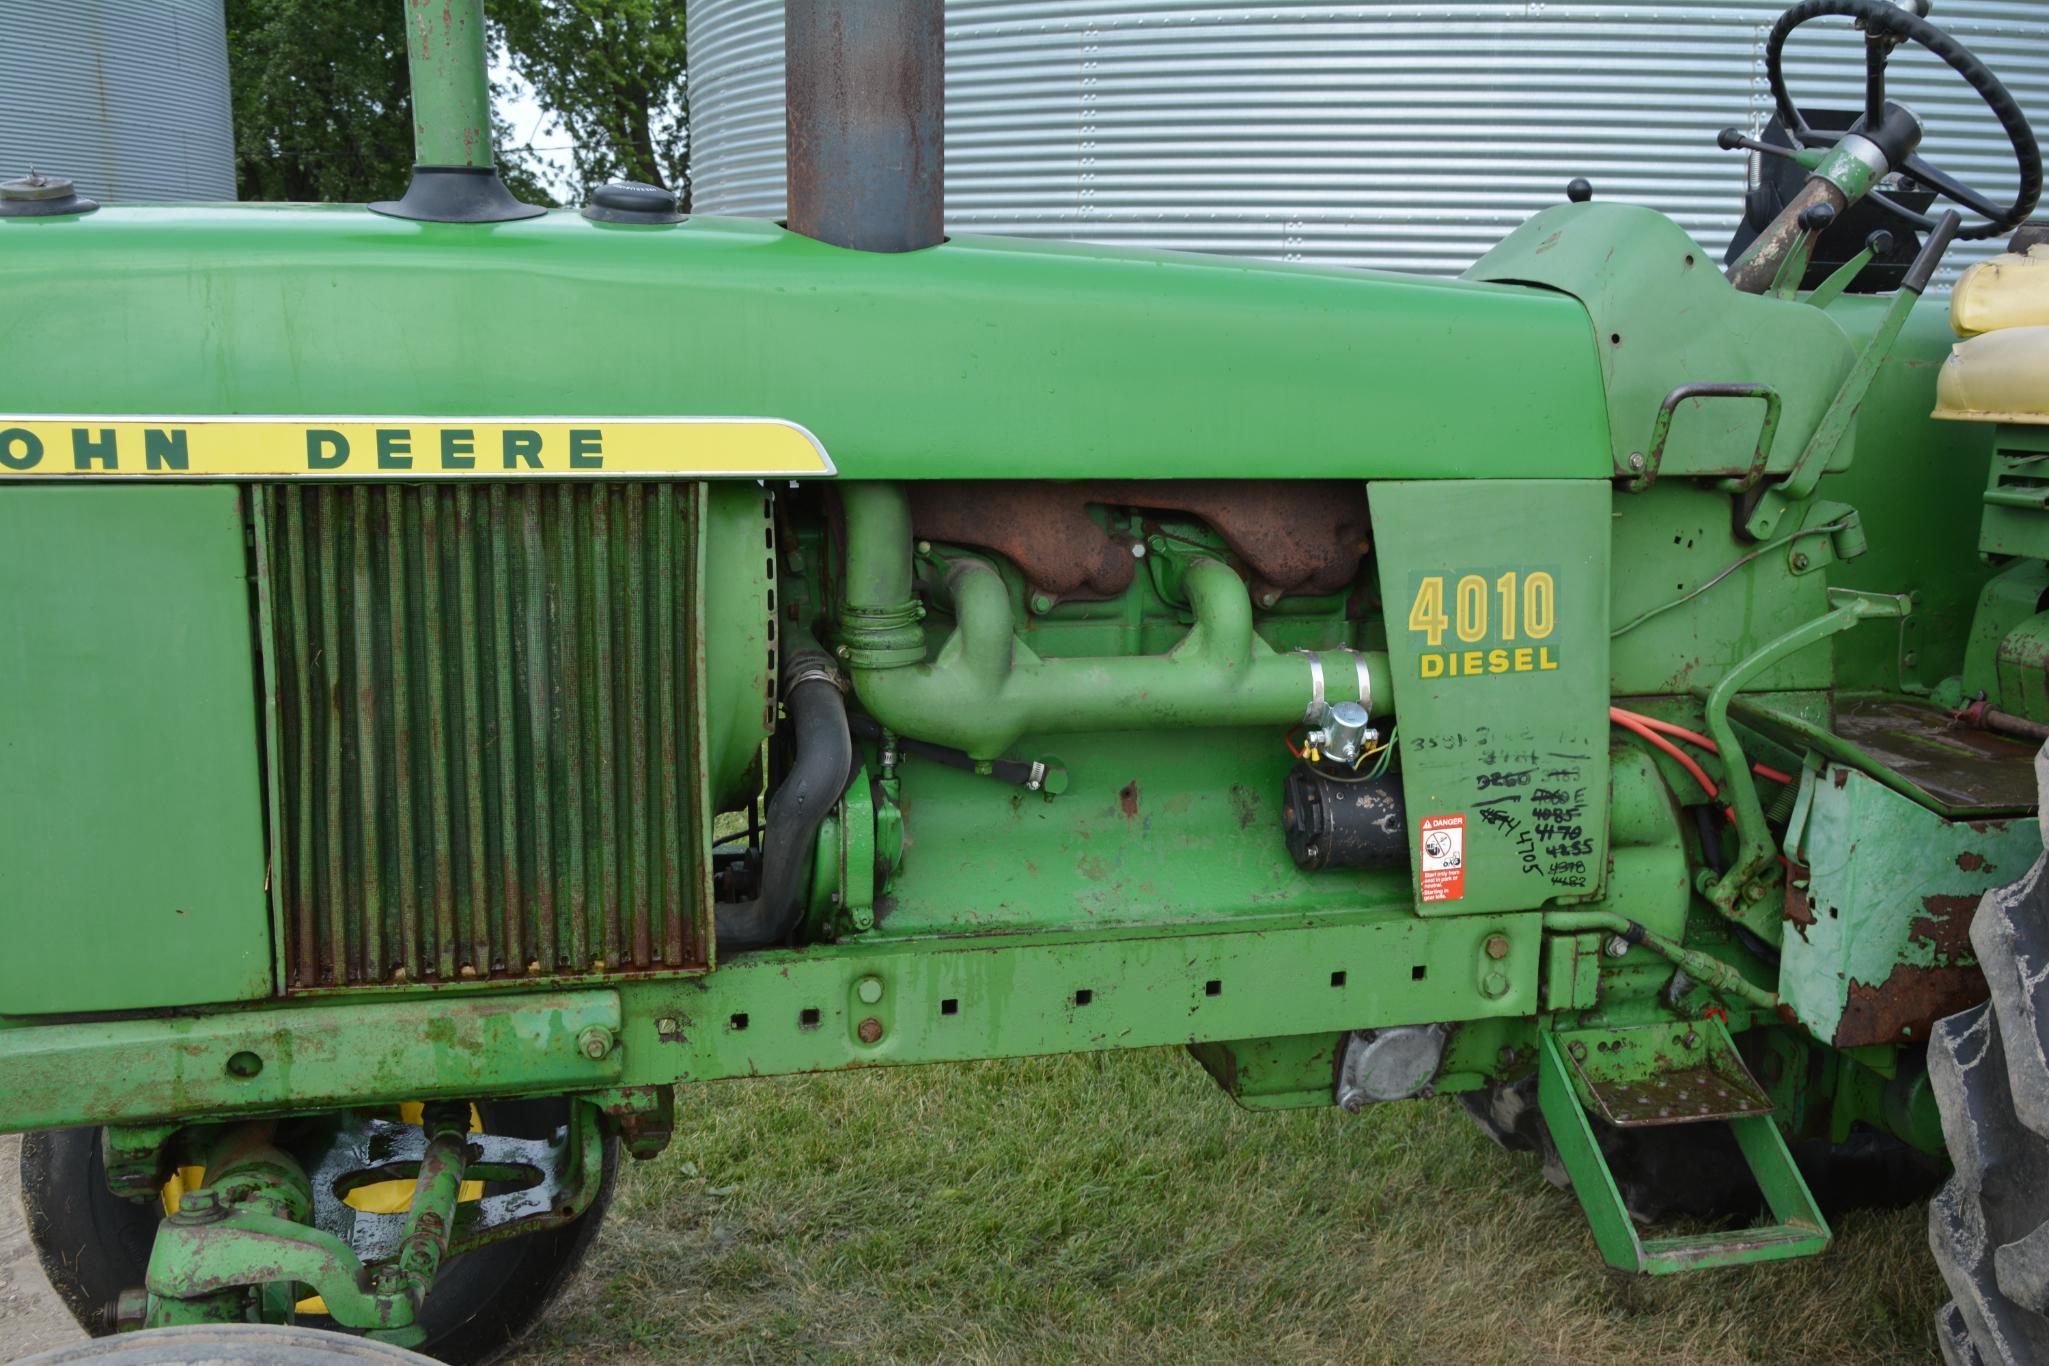 1962 John Deere 4010 diesel tractor